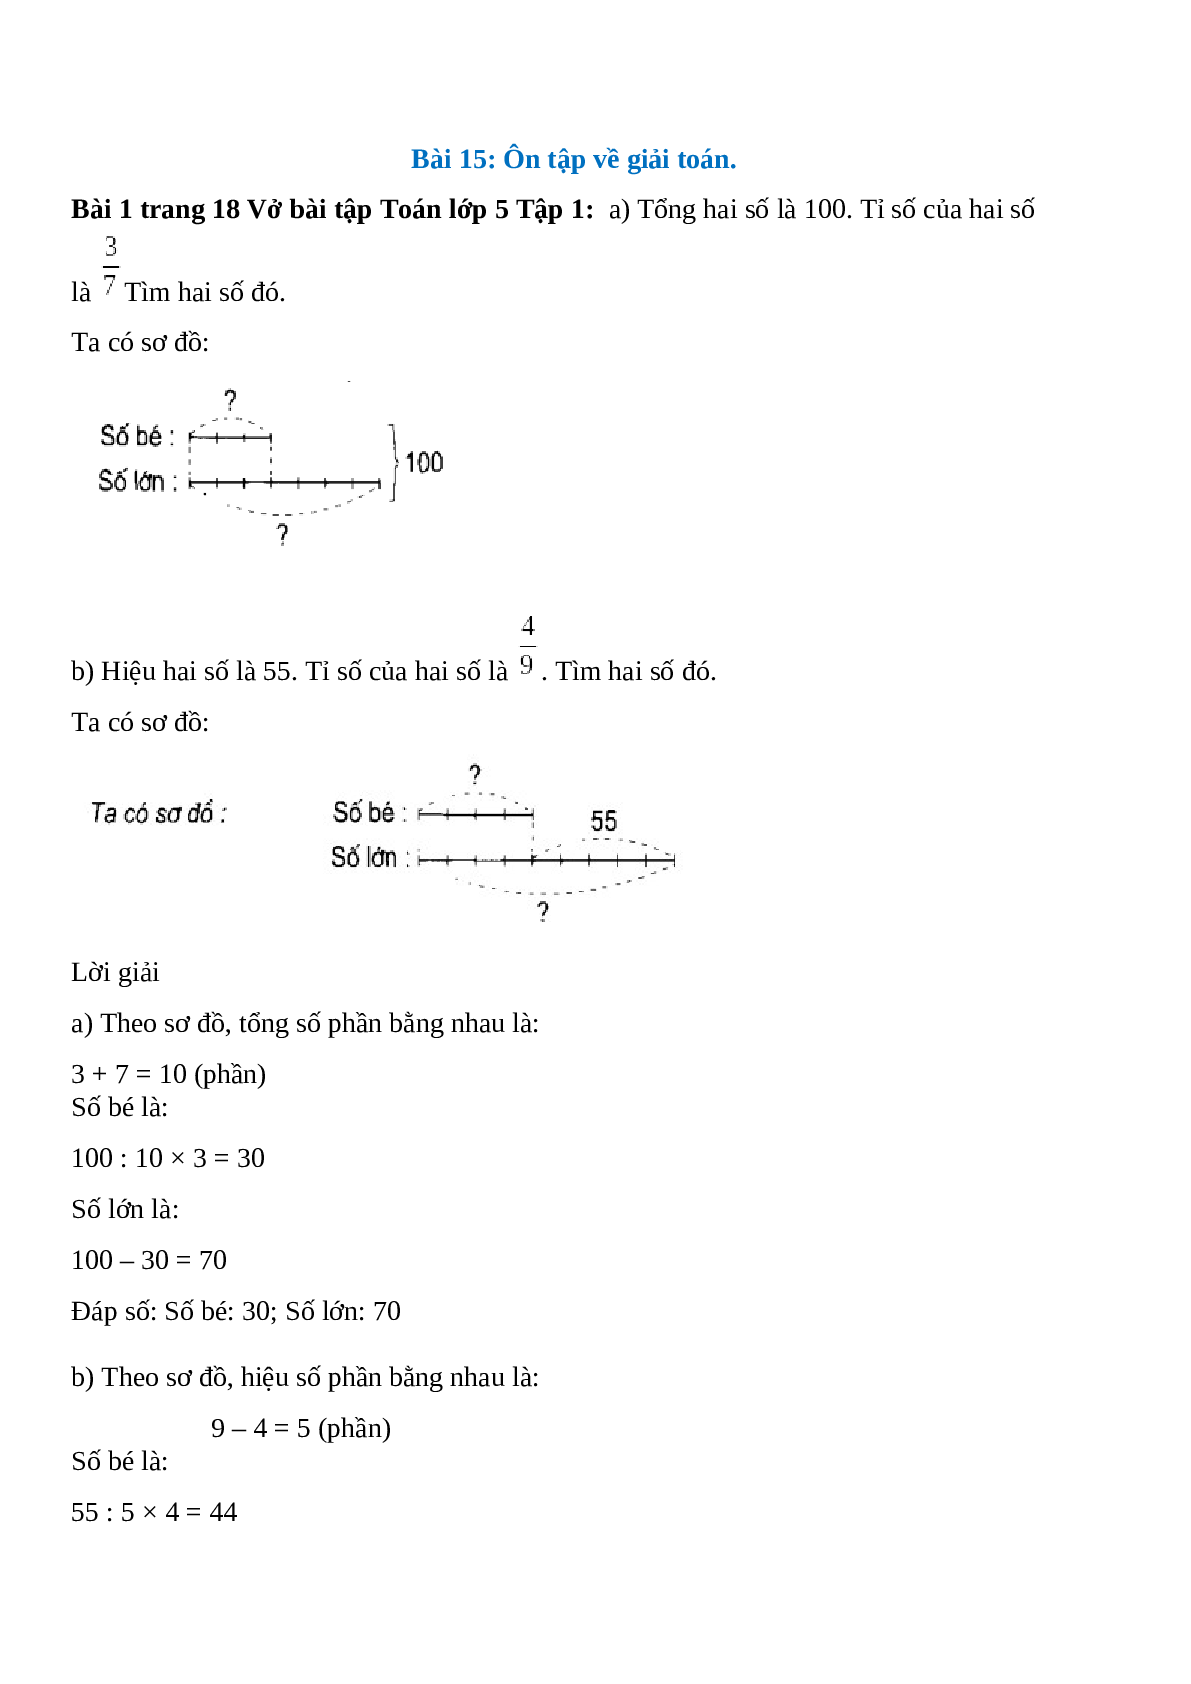 Vở bài tập Toán lớp 5 trang 18, 19, 20 Bài 15: Ôn tập về giải toán (trang 1)